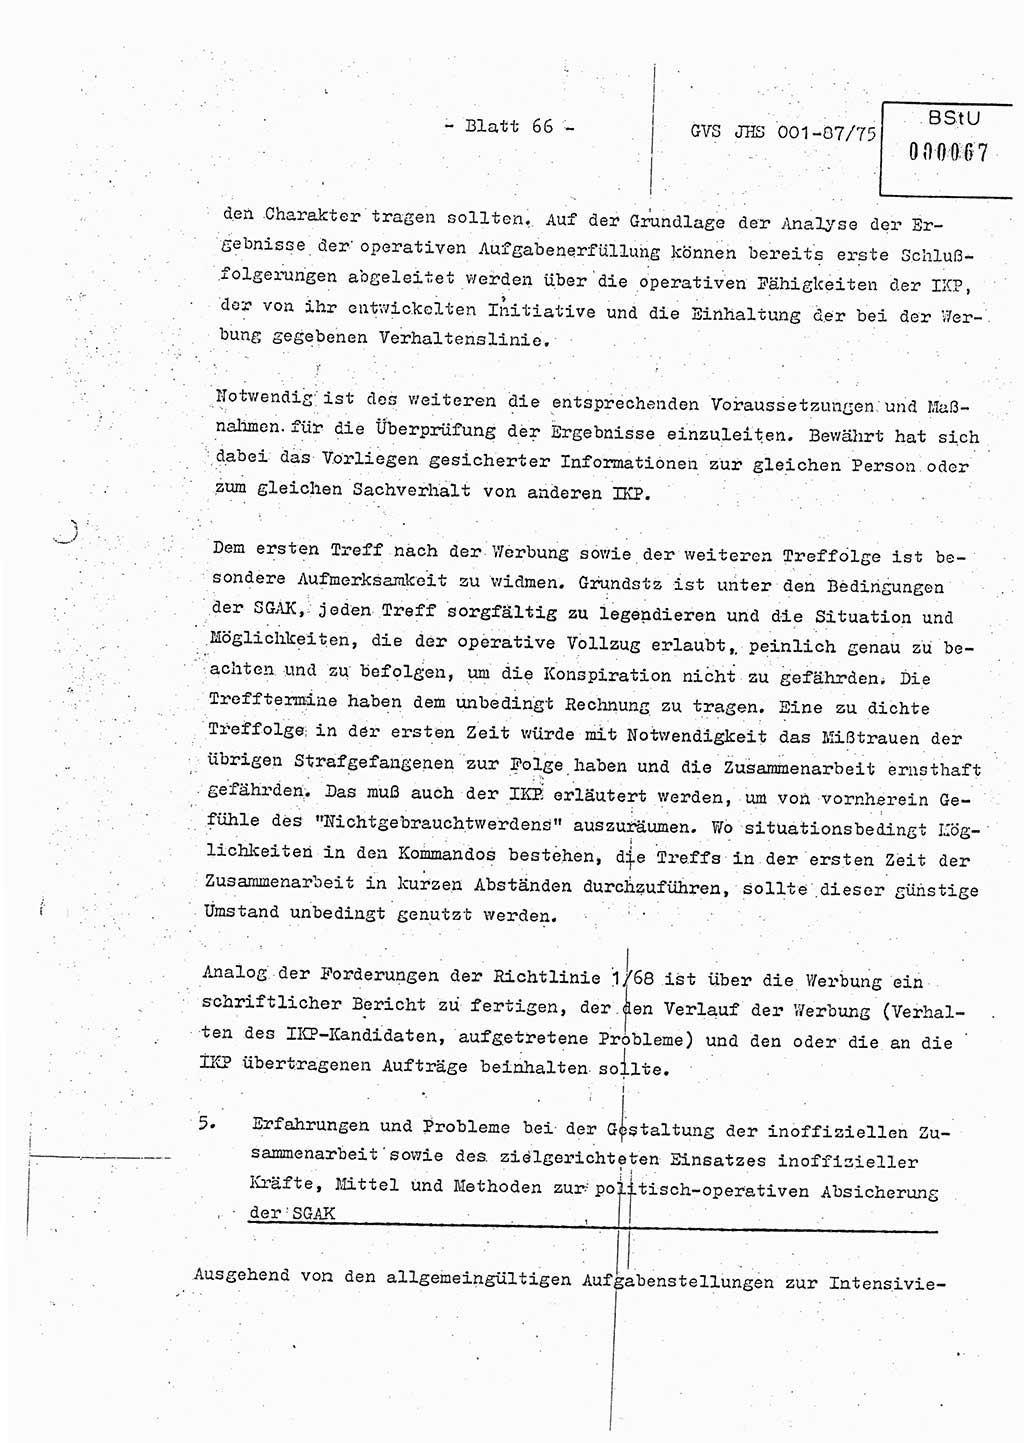 Diplomarbeit Hauptmann Volkmar Heinz (Abt. ⅩⅣ), Oberleutnant Lothar Rüdiger (BV Lpz. Abt. Ⅺ), Ministerium für Staatssicherheit (MfS) [Deutsche Demokratische Republik (DDR)], Juristische Hochschule (JHS), Geheime Verschlußsache (GVS) o001-87/75, Potsdam 1975, Seite 66 (Dipl.-Arb. MfS DDR JHS GVS o001-87/75 1975, S. 66)